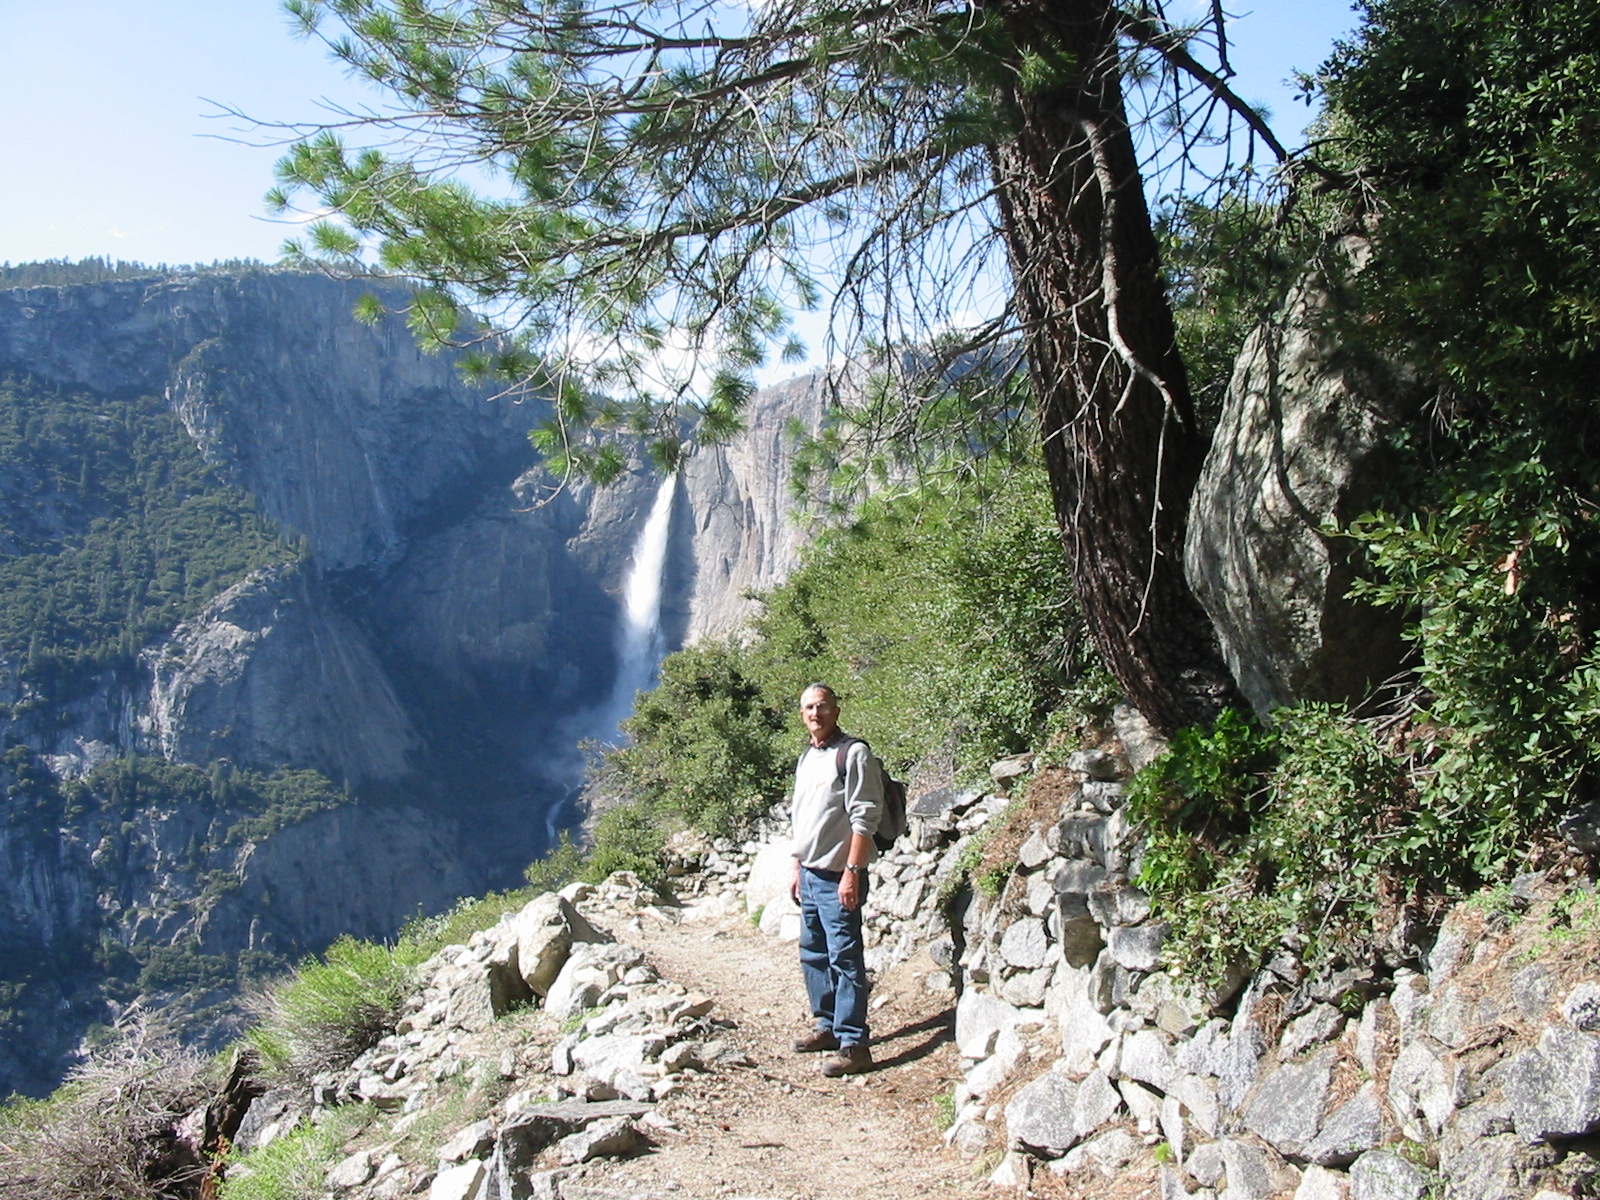 Me hiking in Yosemite, 2004